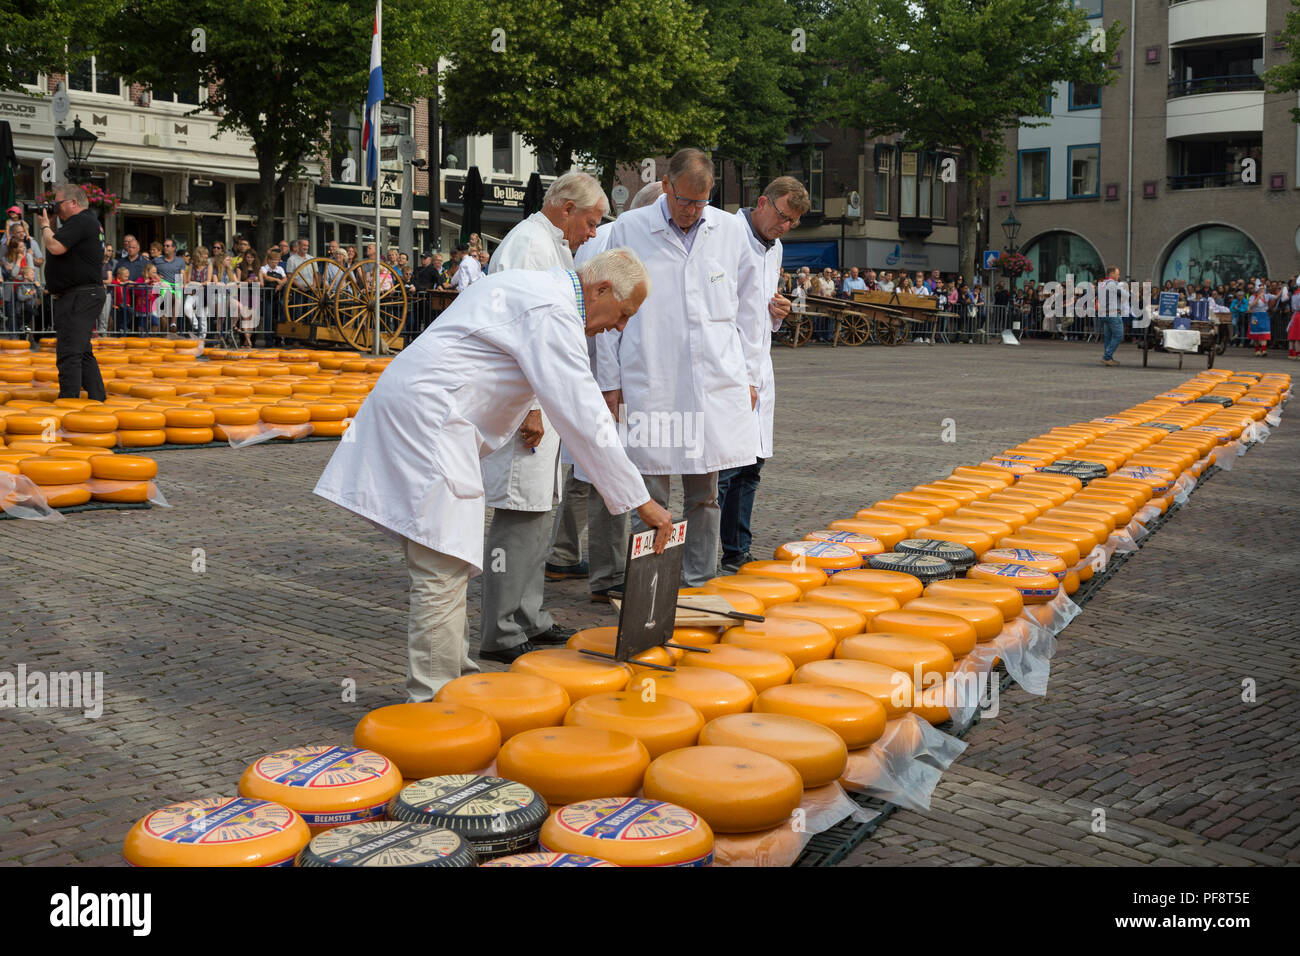 Alkmaar, Niederlande - 01. Juni 2018: Gruppe von Inspektoren, die Prüfung und Genehmigung der Qualität der Käse auf dem Käsemarkt Stockfoto